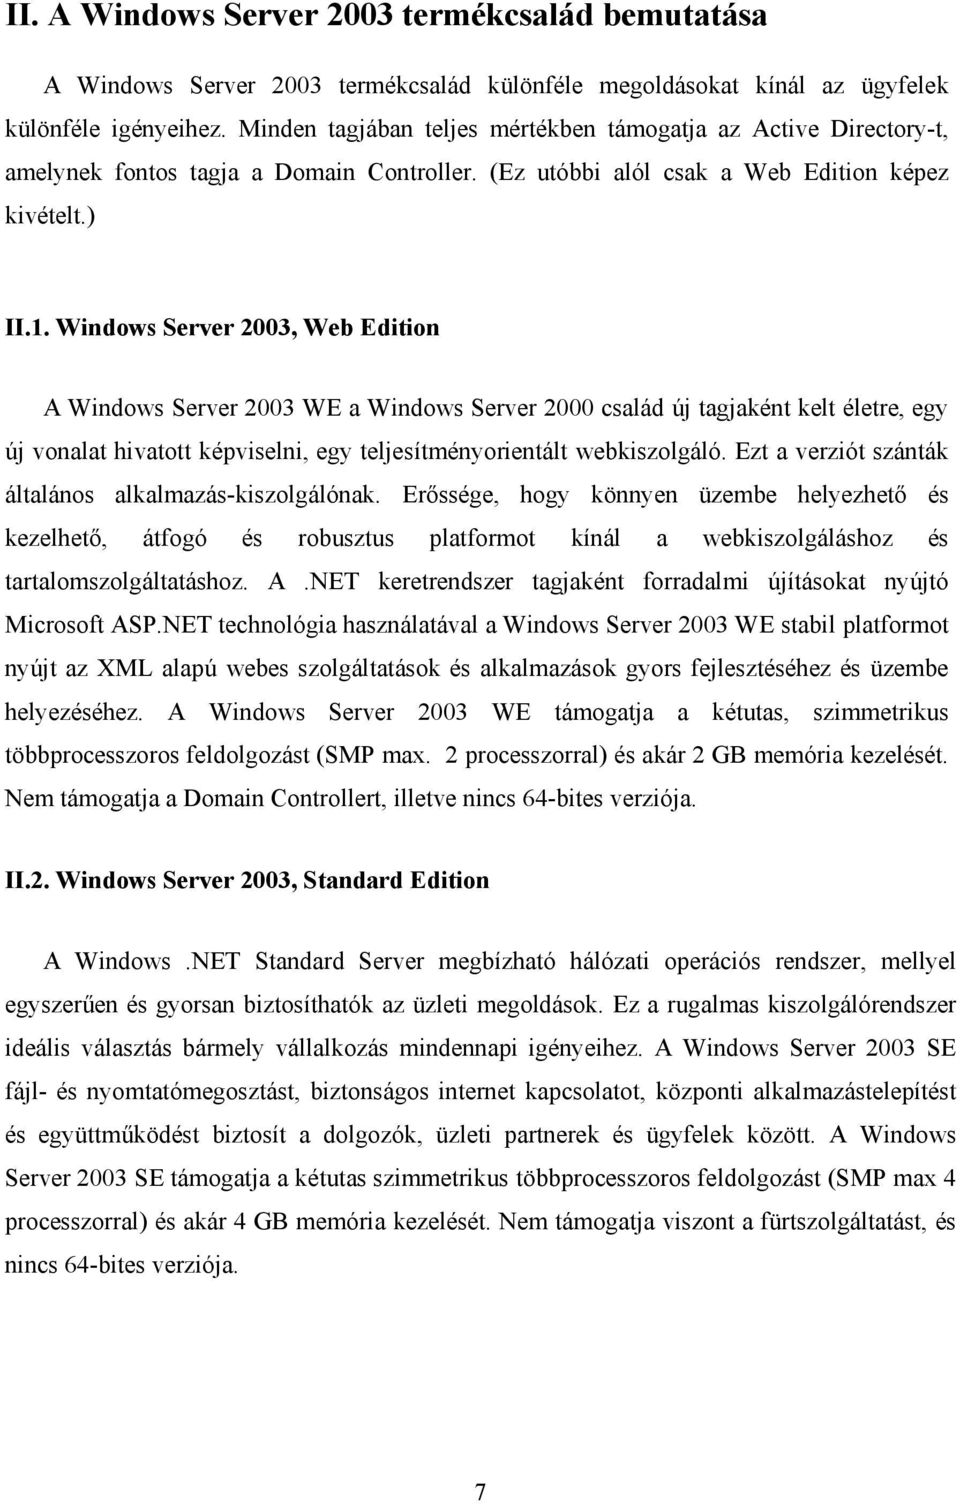 Windows Server 2003, Web Edition A Windows Server 2003 WE a Windows Server 2000 család új tagjaként kelt életre, egy új vonalat hivatott képviselni, egy teljesítményorientált webkiszolgáló.